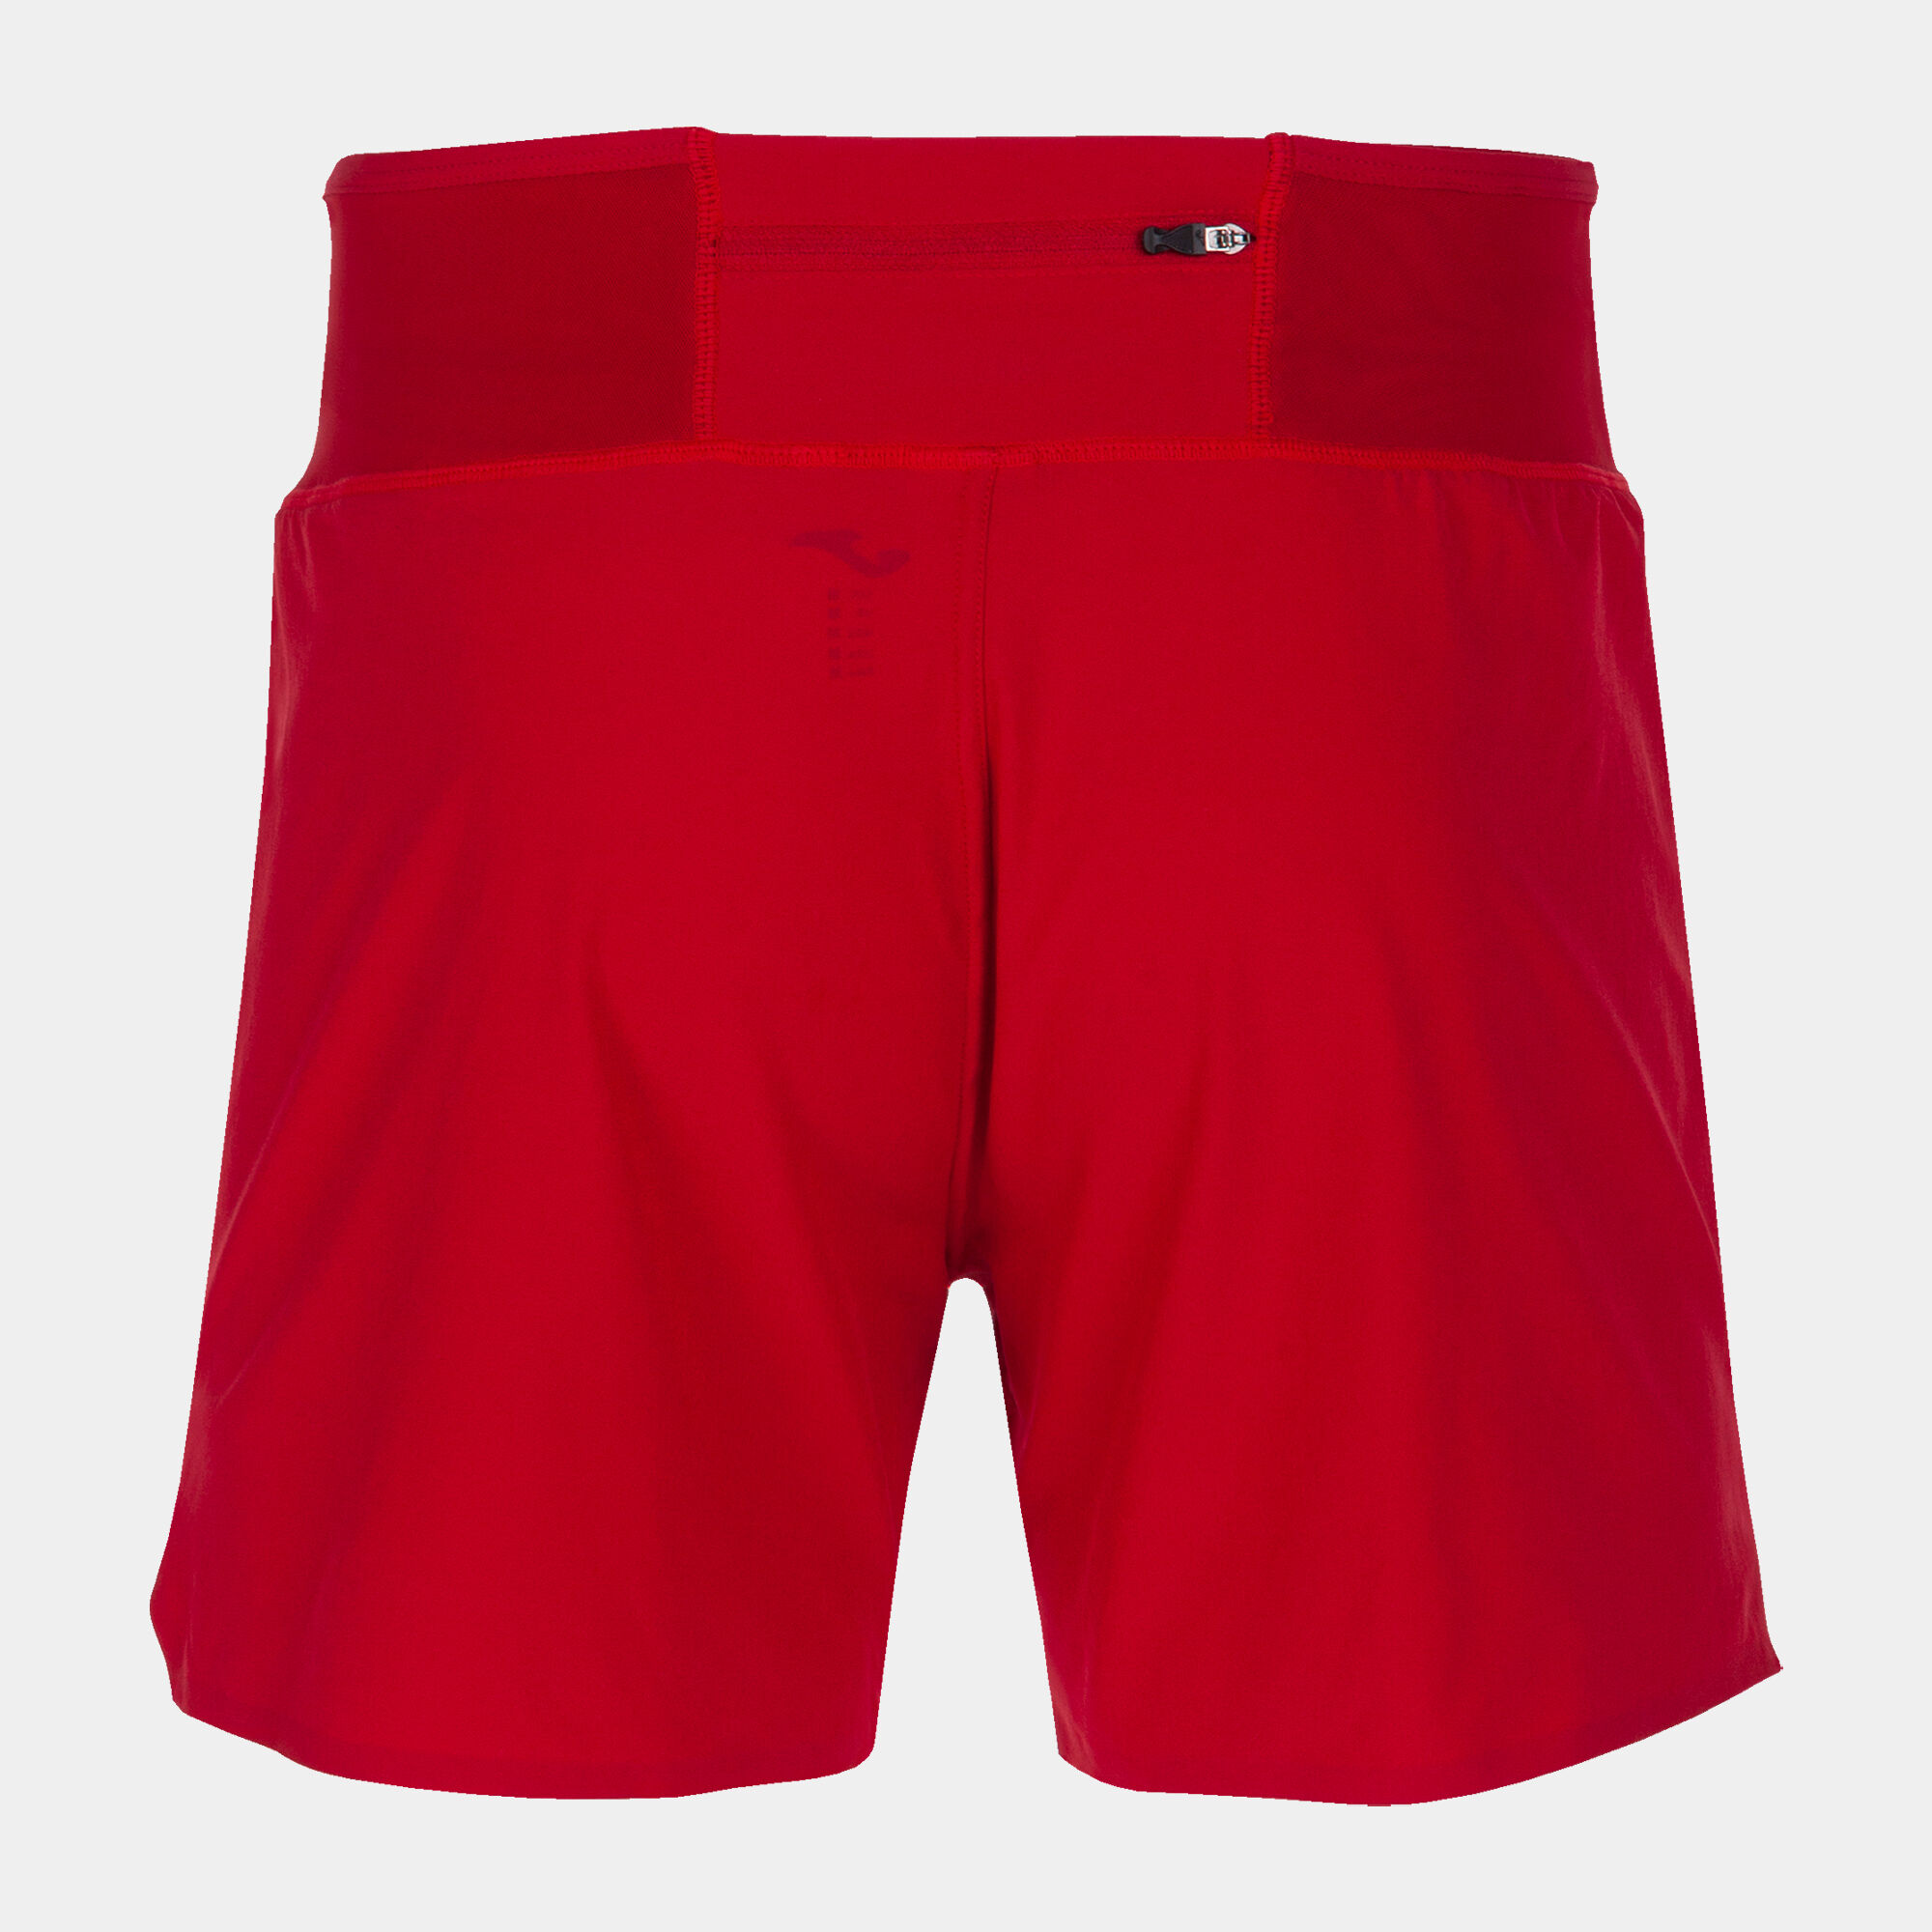 Pantaloncini uomo R-Combi rosso